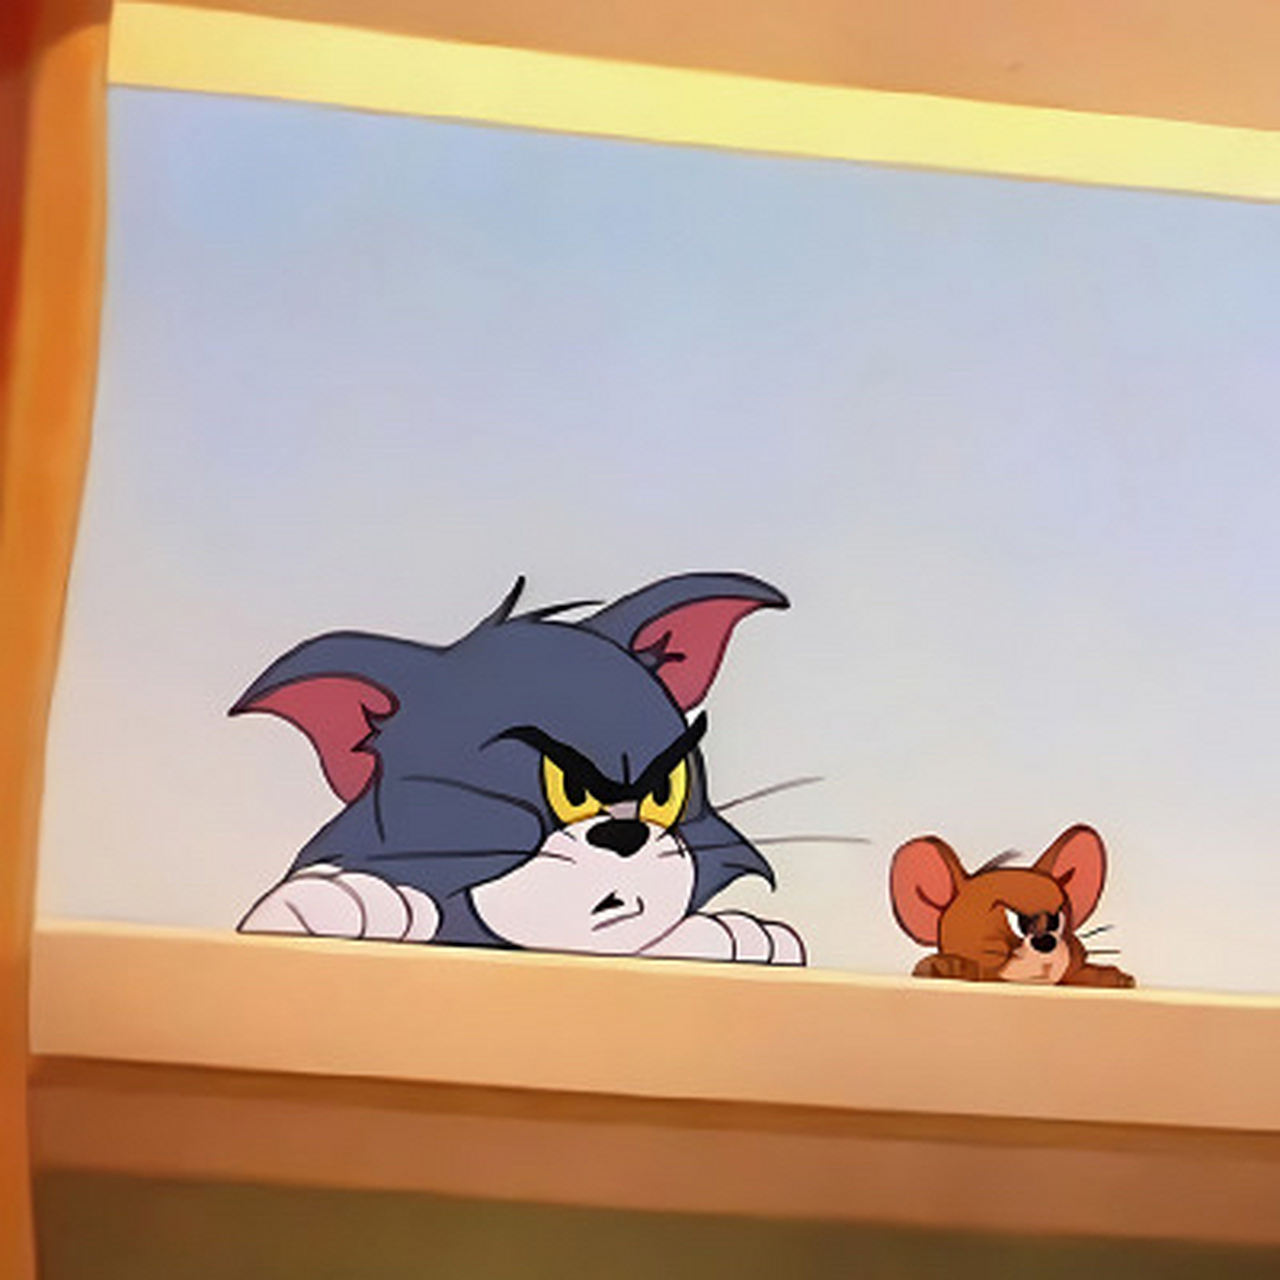 猫和老鼠背景图情侣图片